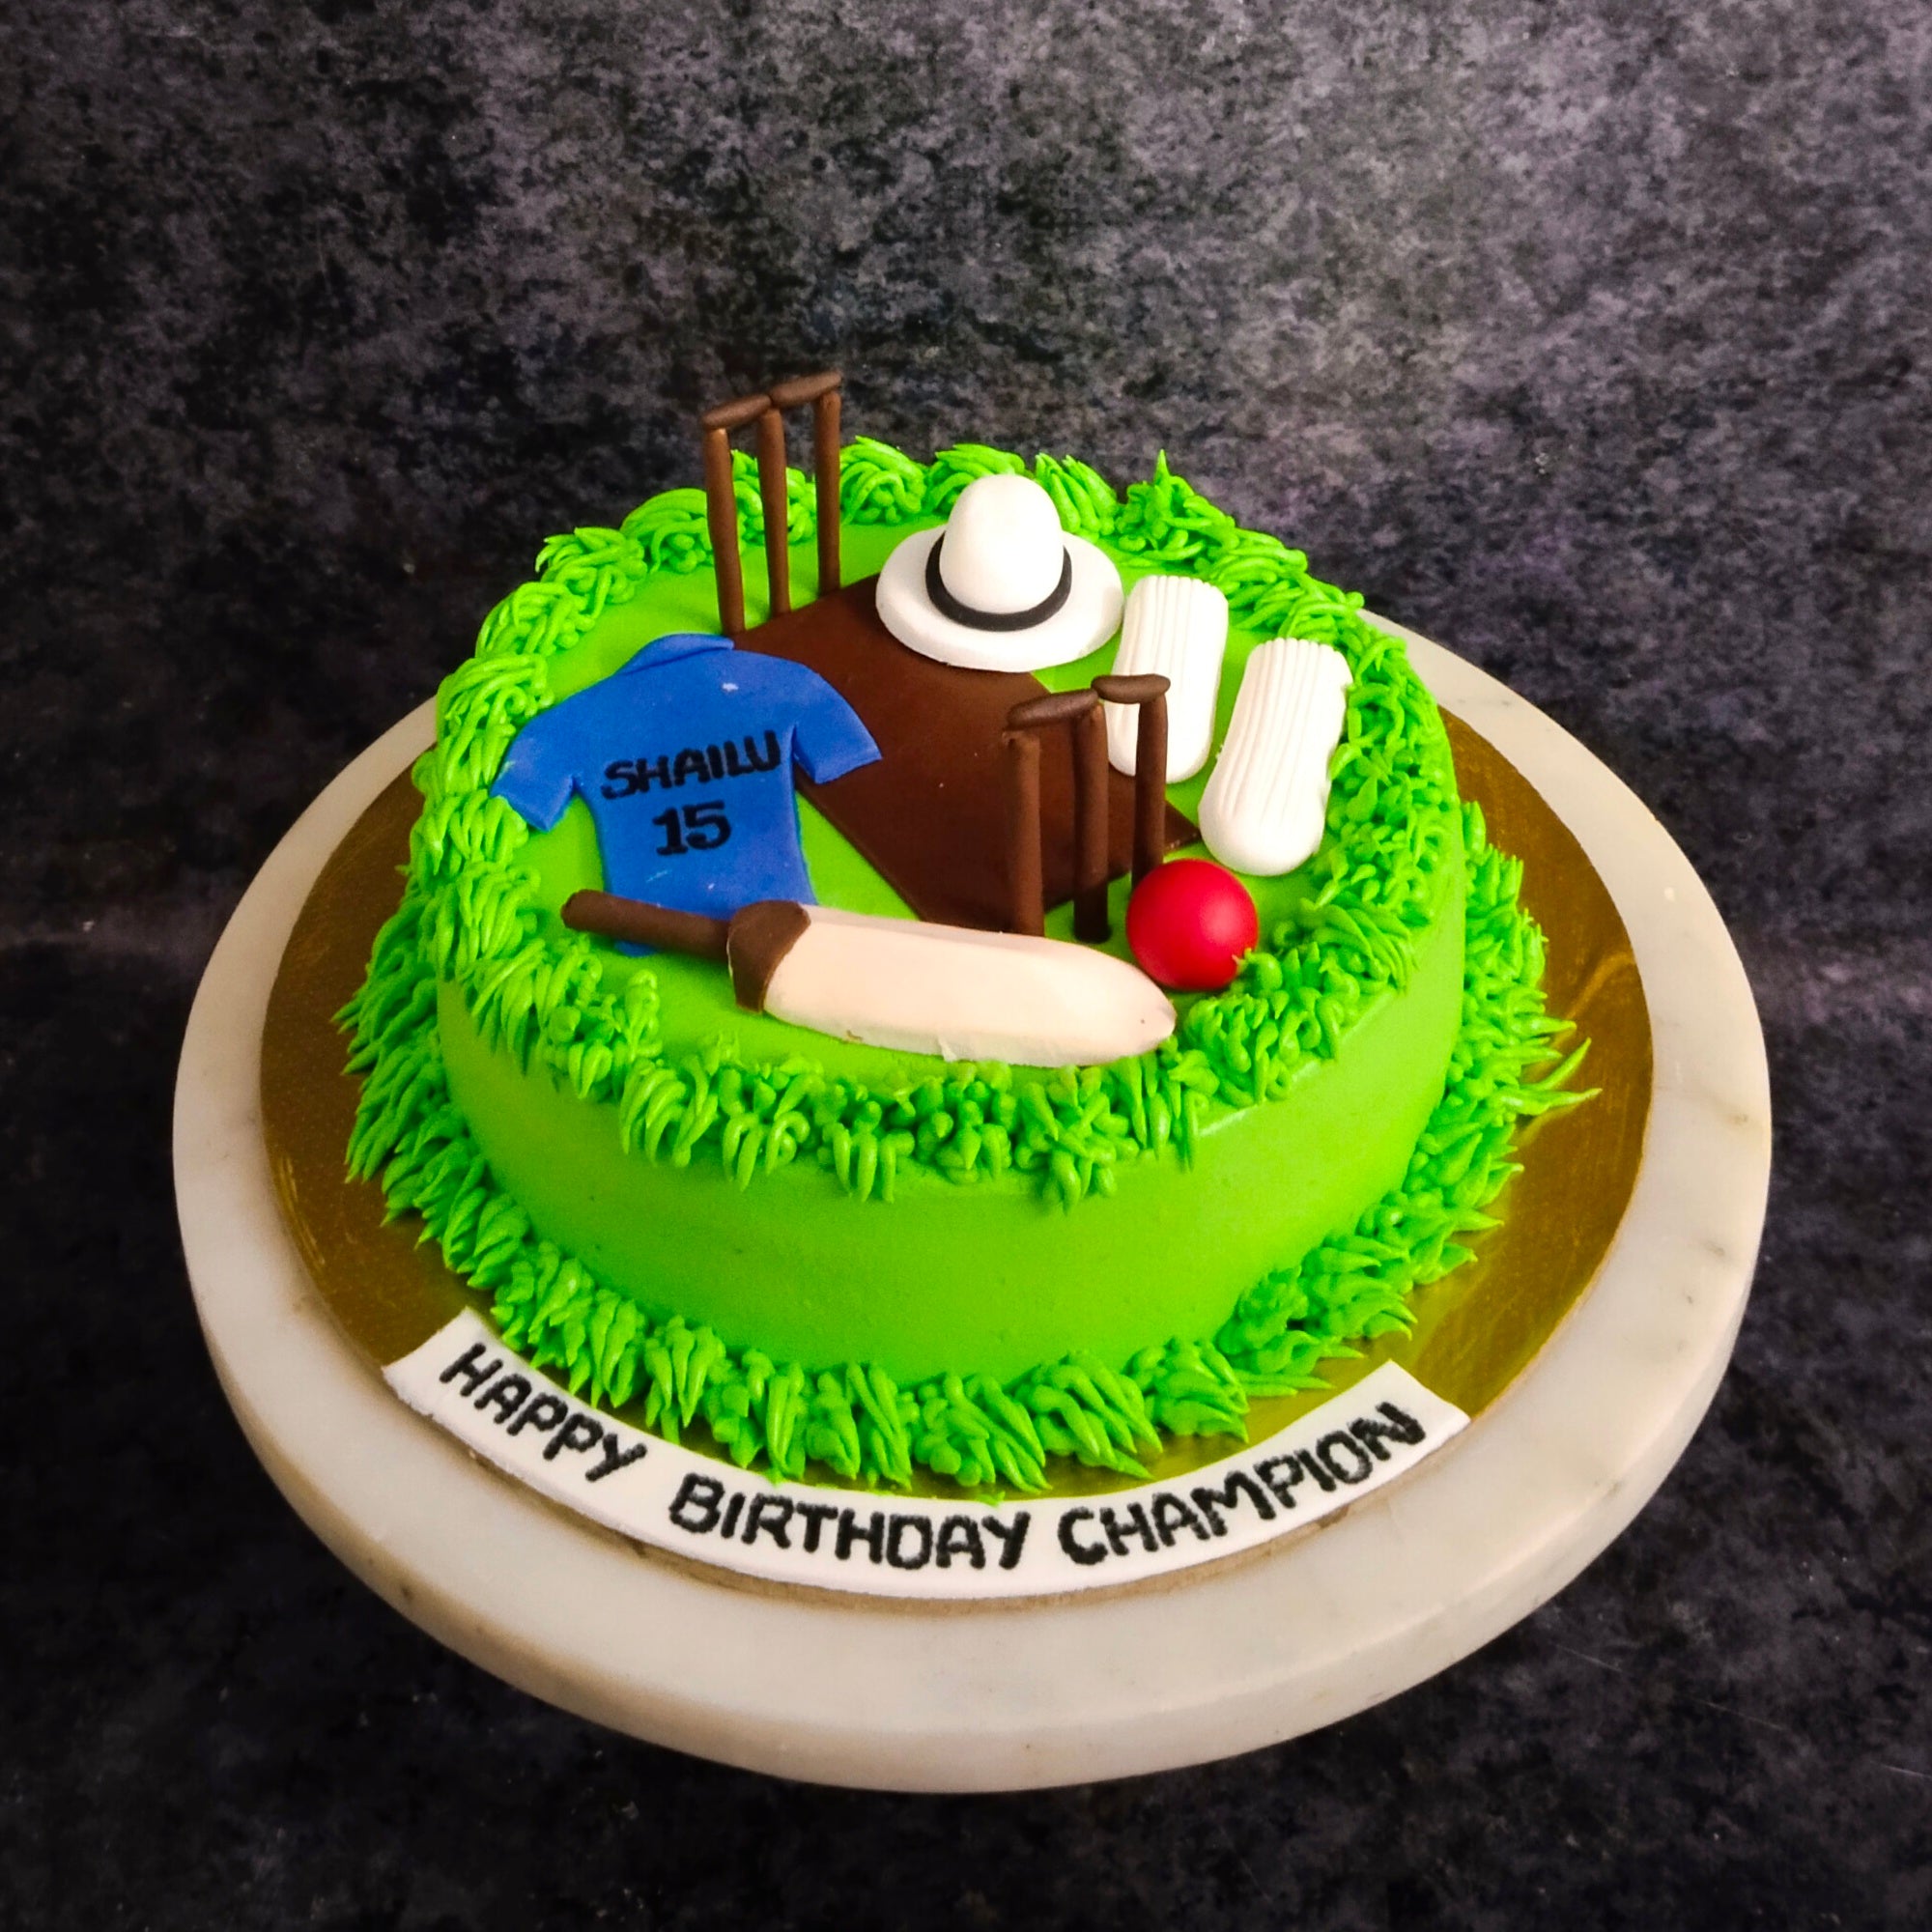 Cricket Theme Birthday Cake Design Ideas |Cricket Pitch Fondant Cake  |Birthday Cake Decorating Ideas - YouTube